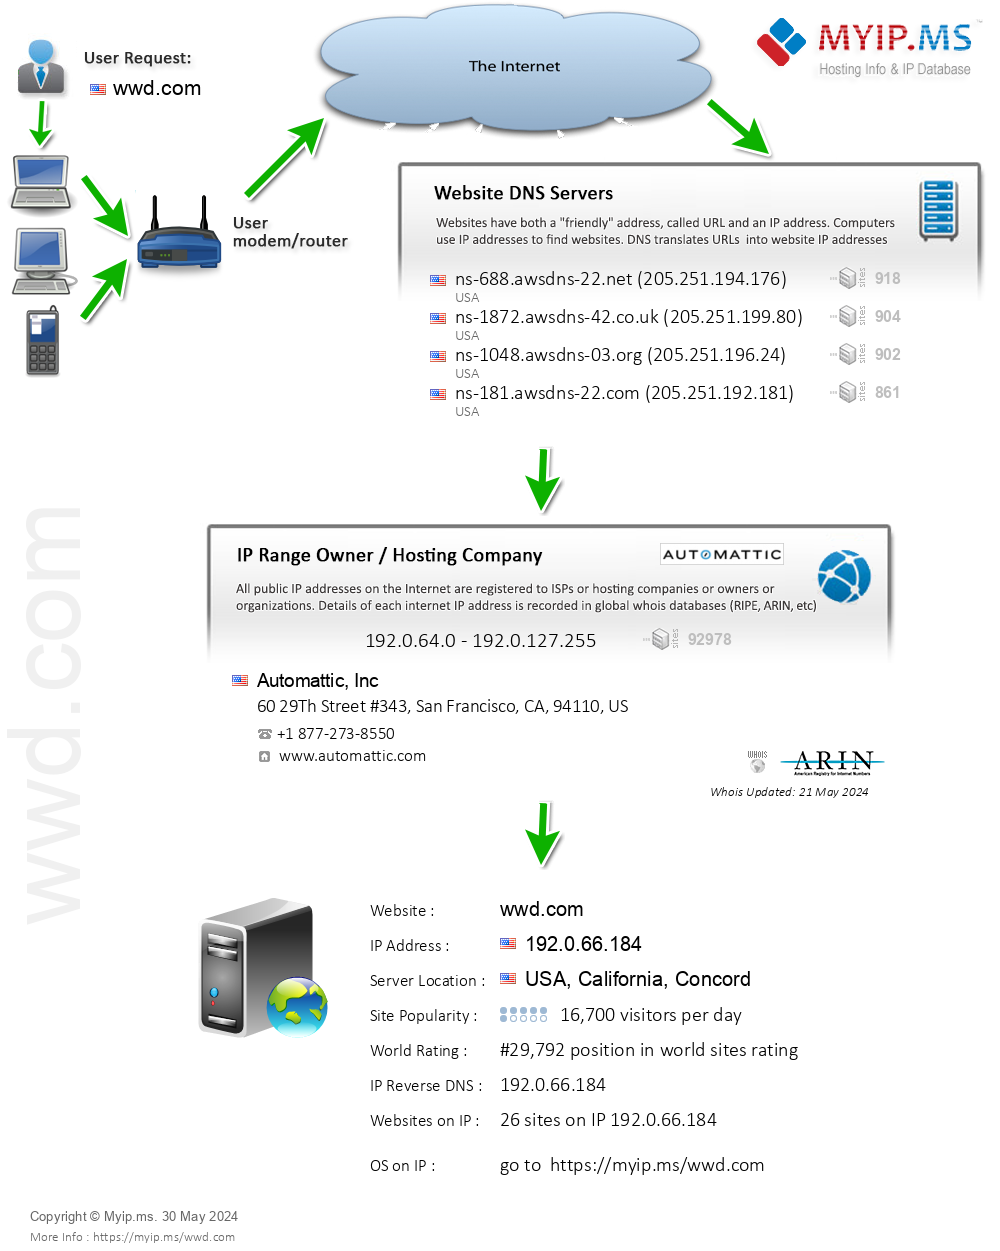 Wwd.com - Website Hosting Visual IP Diagram